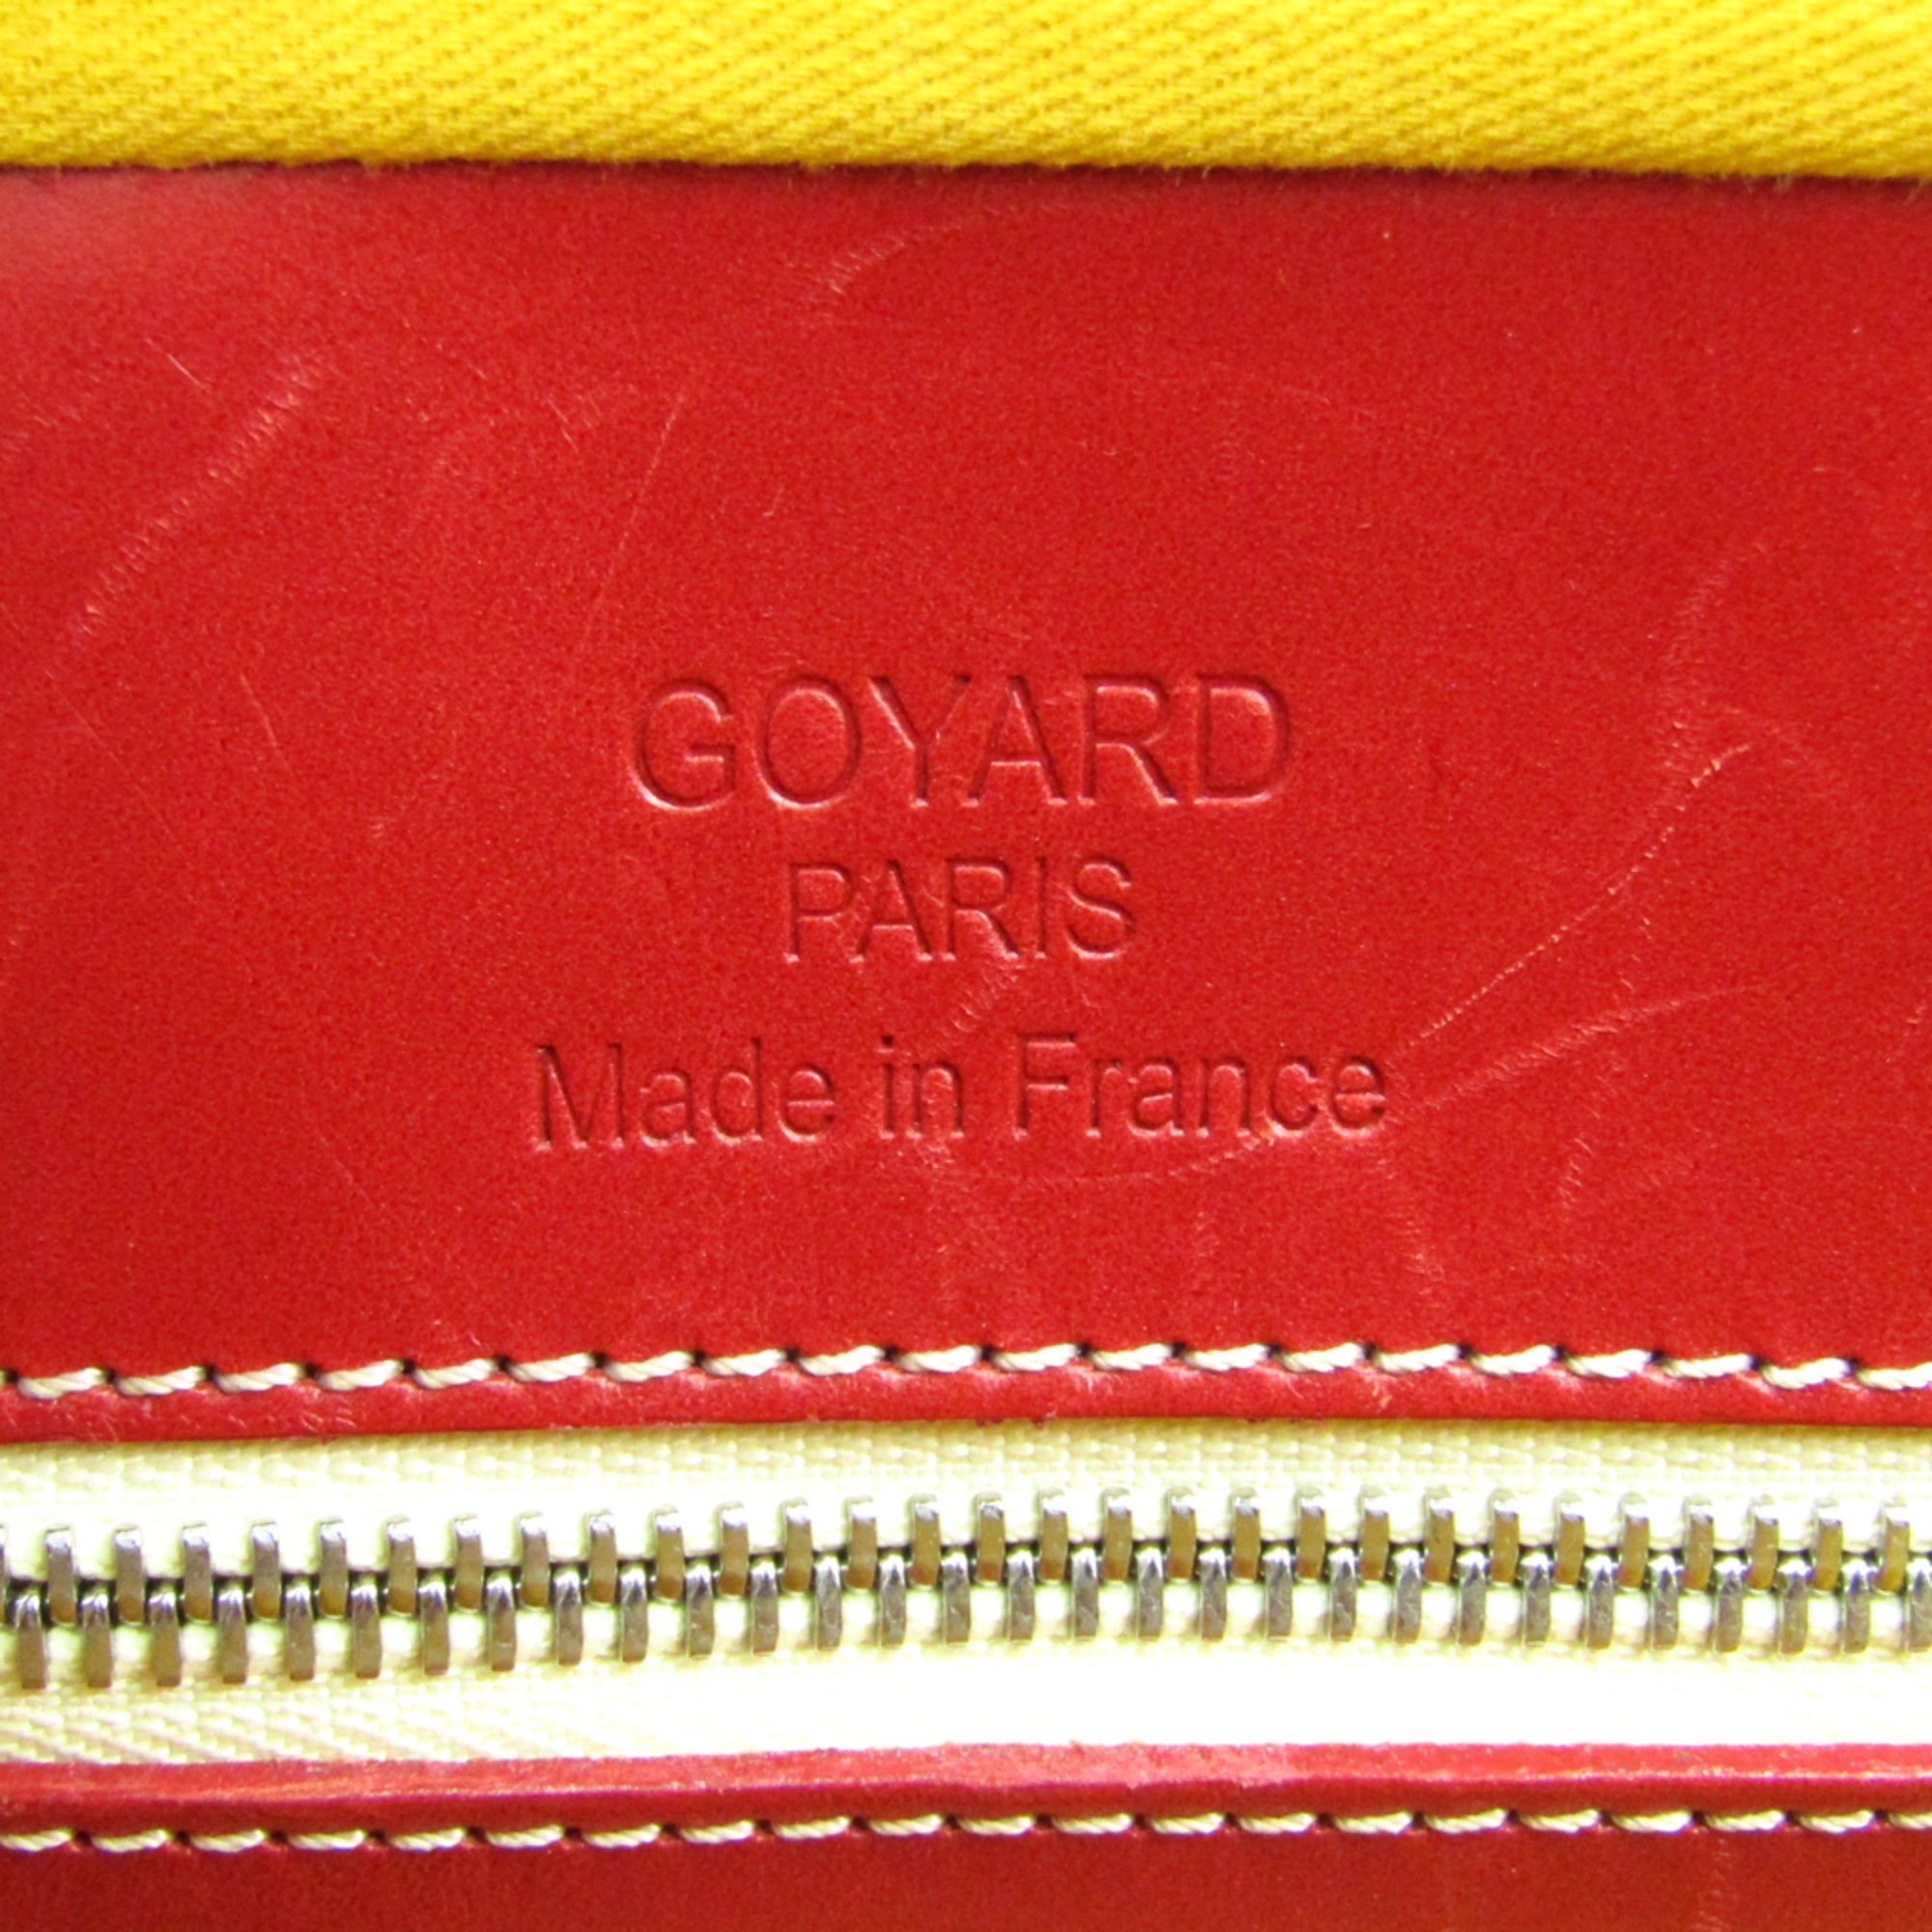 Goyard Ambassade Men's Leather,Canvas Briefcase Red